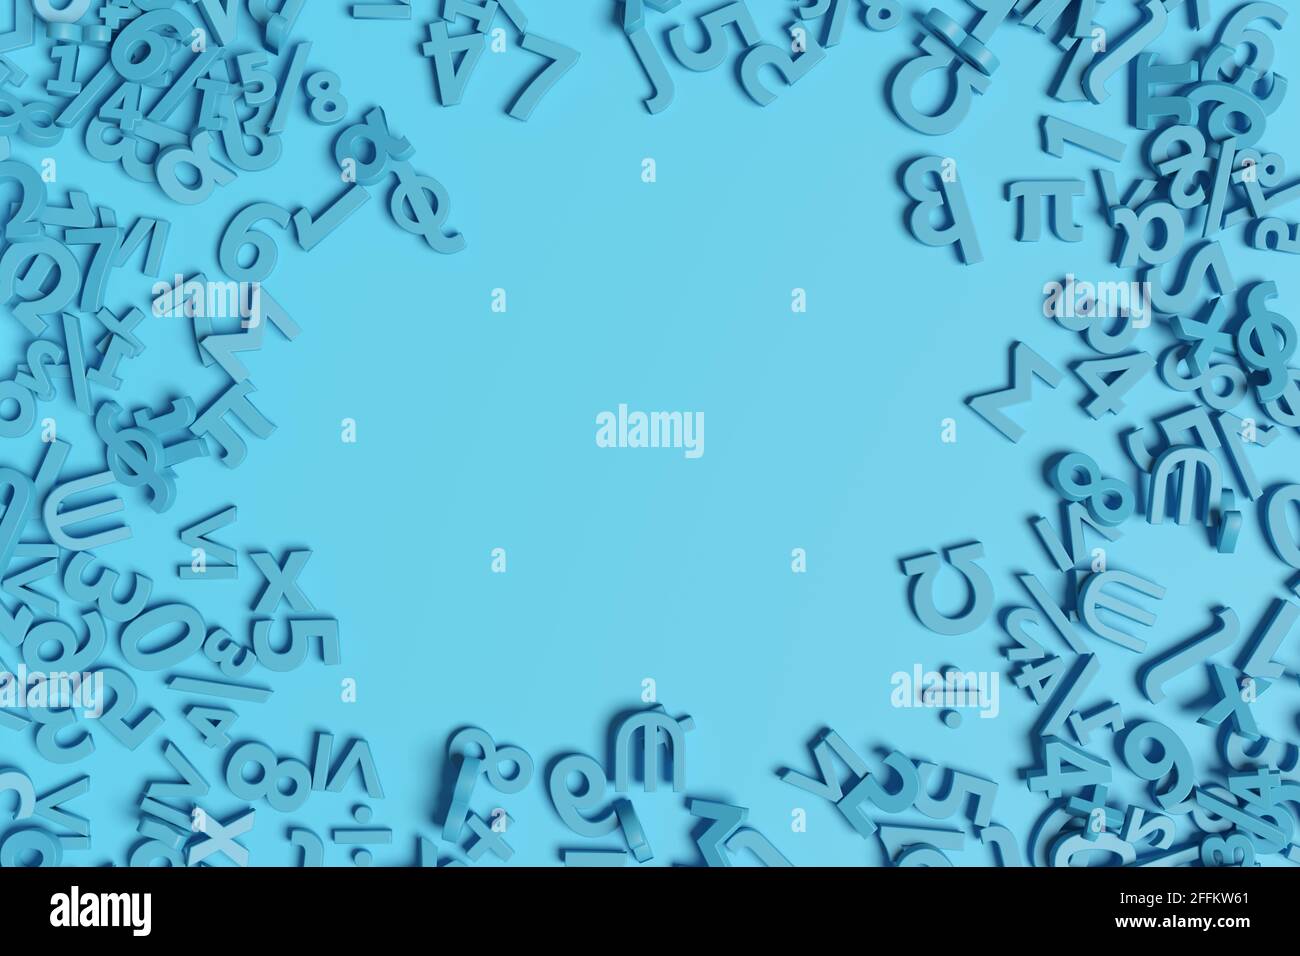 Arrière-plan des chiffres bleus et des symboles mathématiques. illustration 3d. Banque D'Images